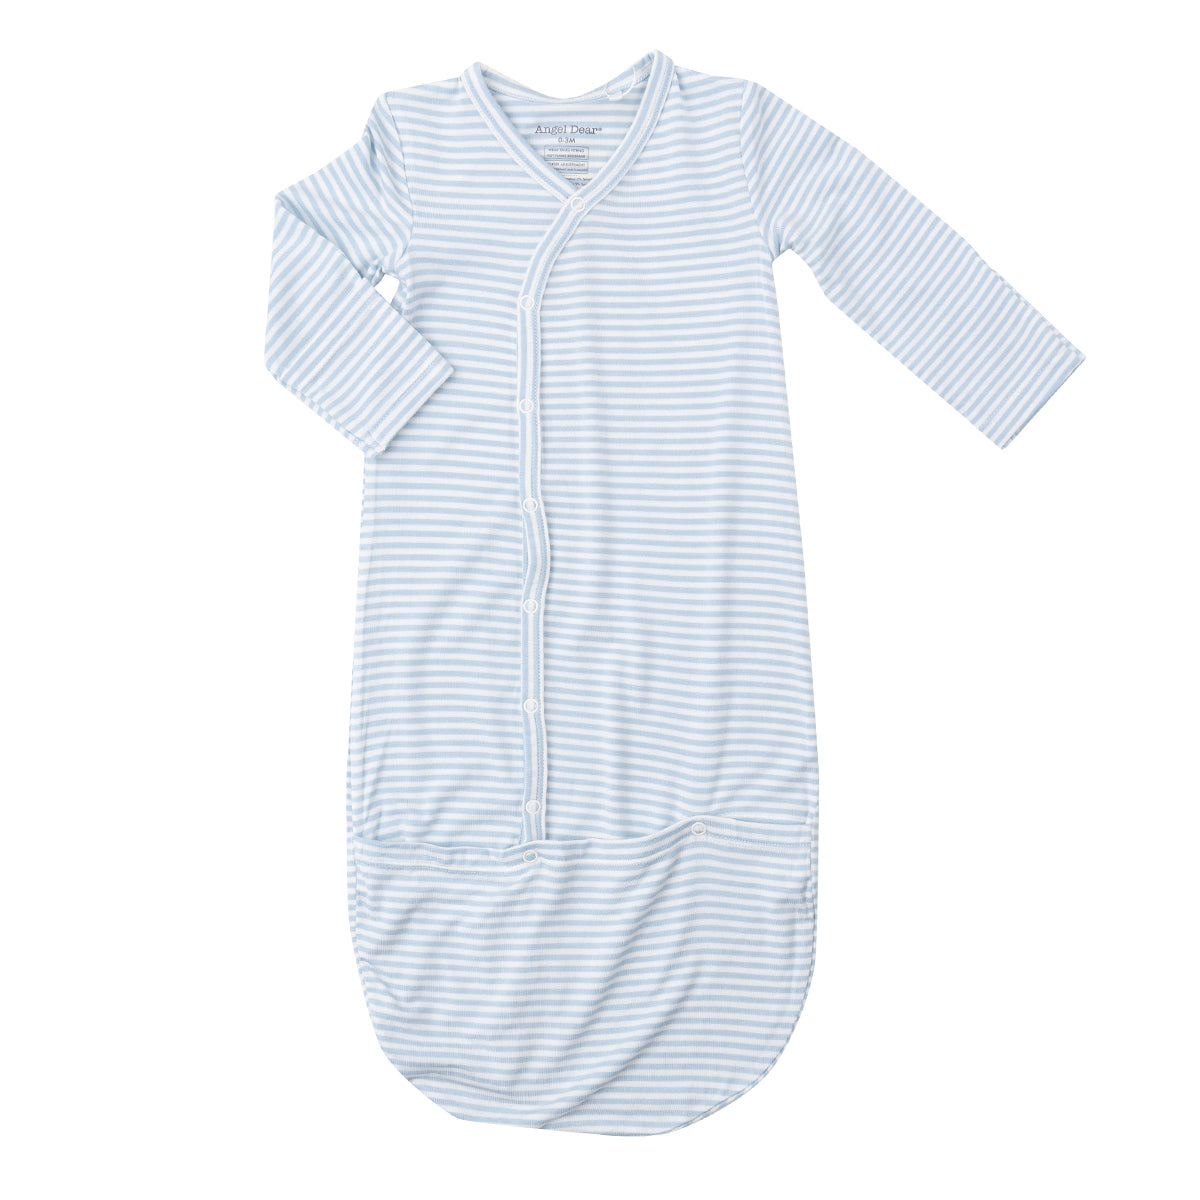 Angel Dear Baby Boy's Blue Striped Bundler Gown